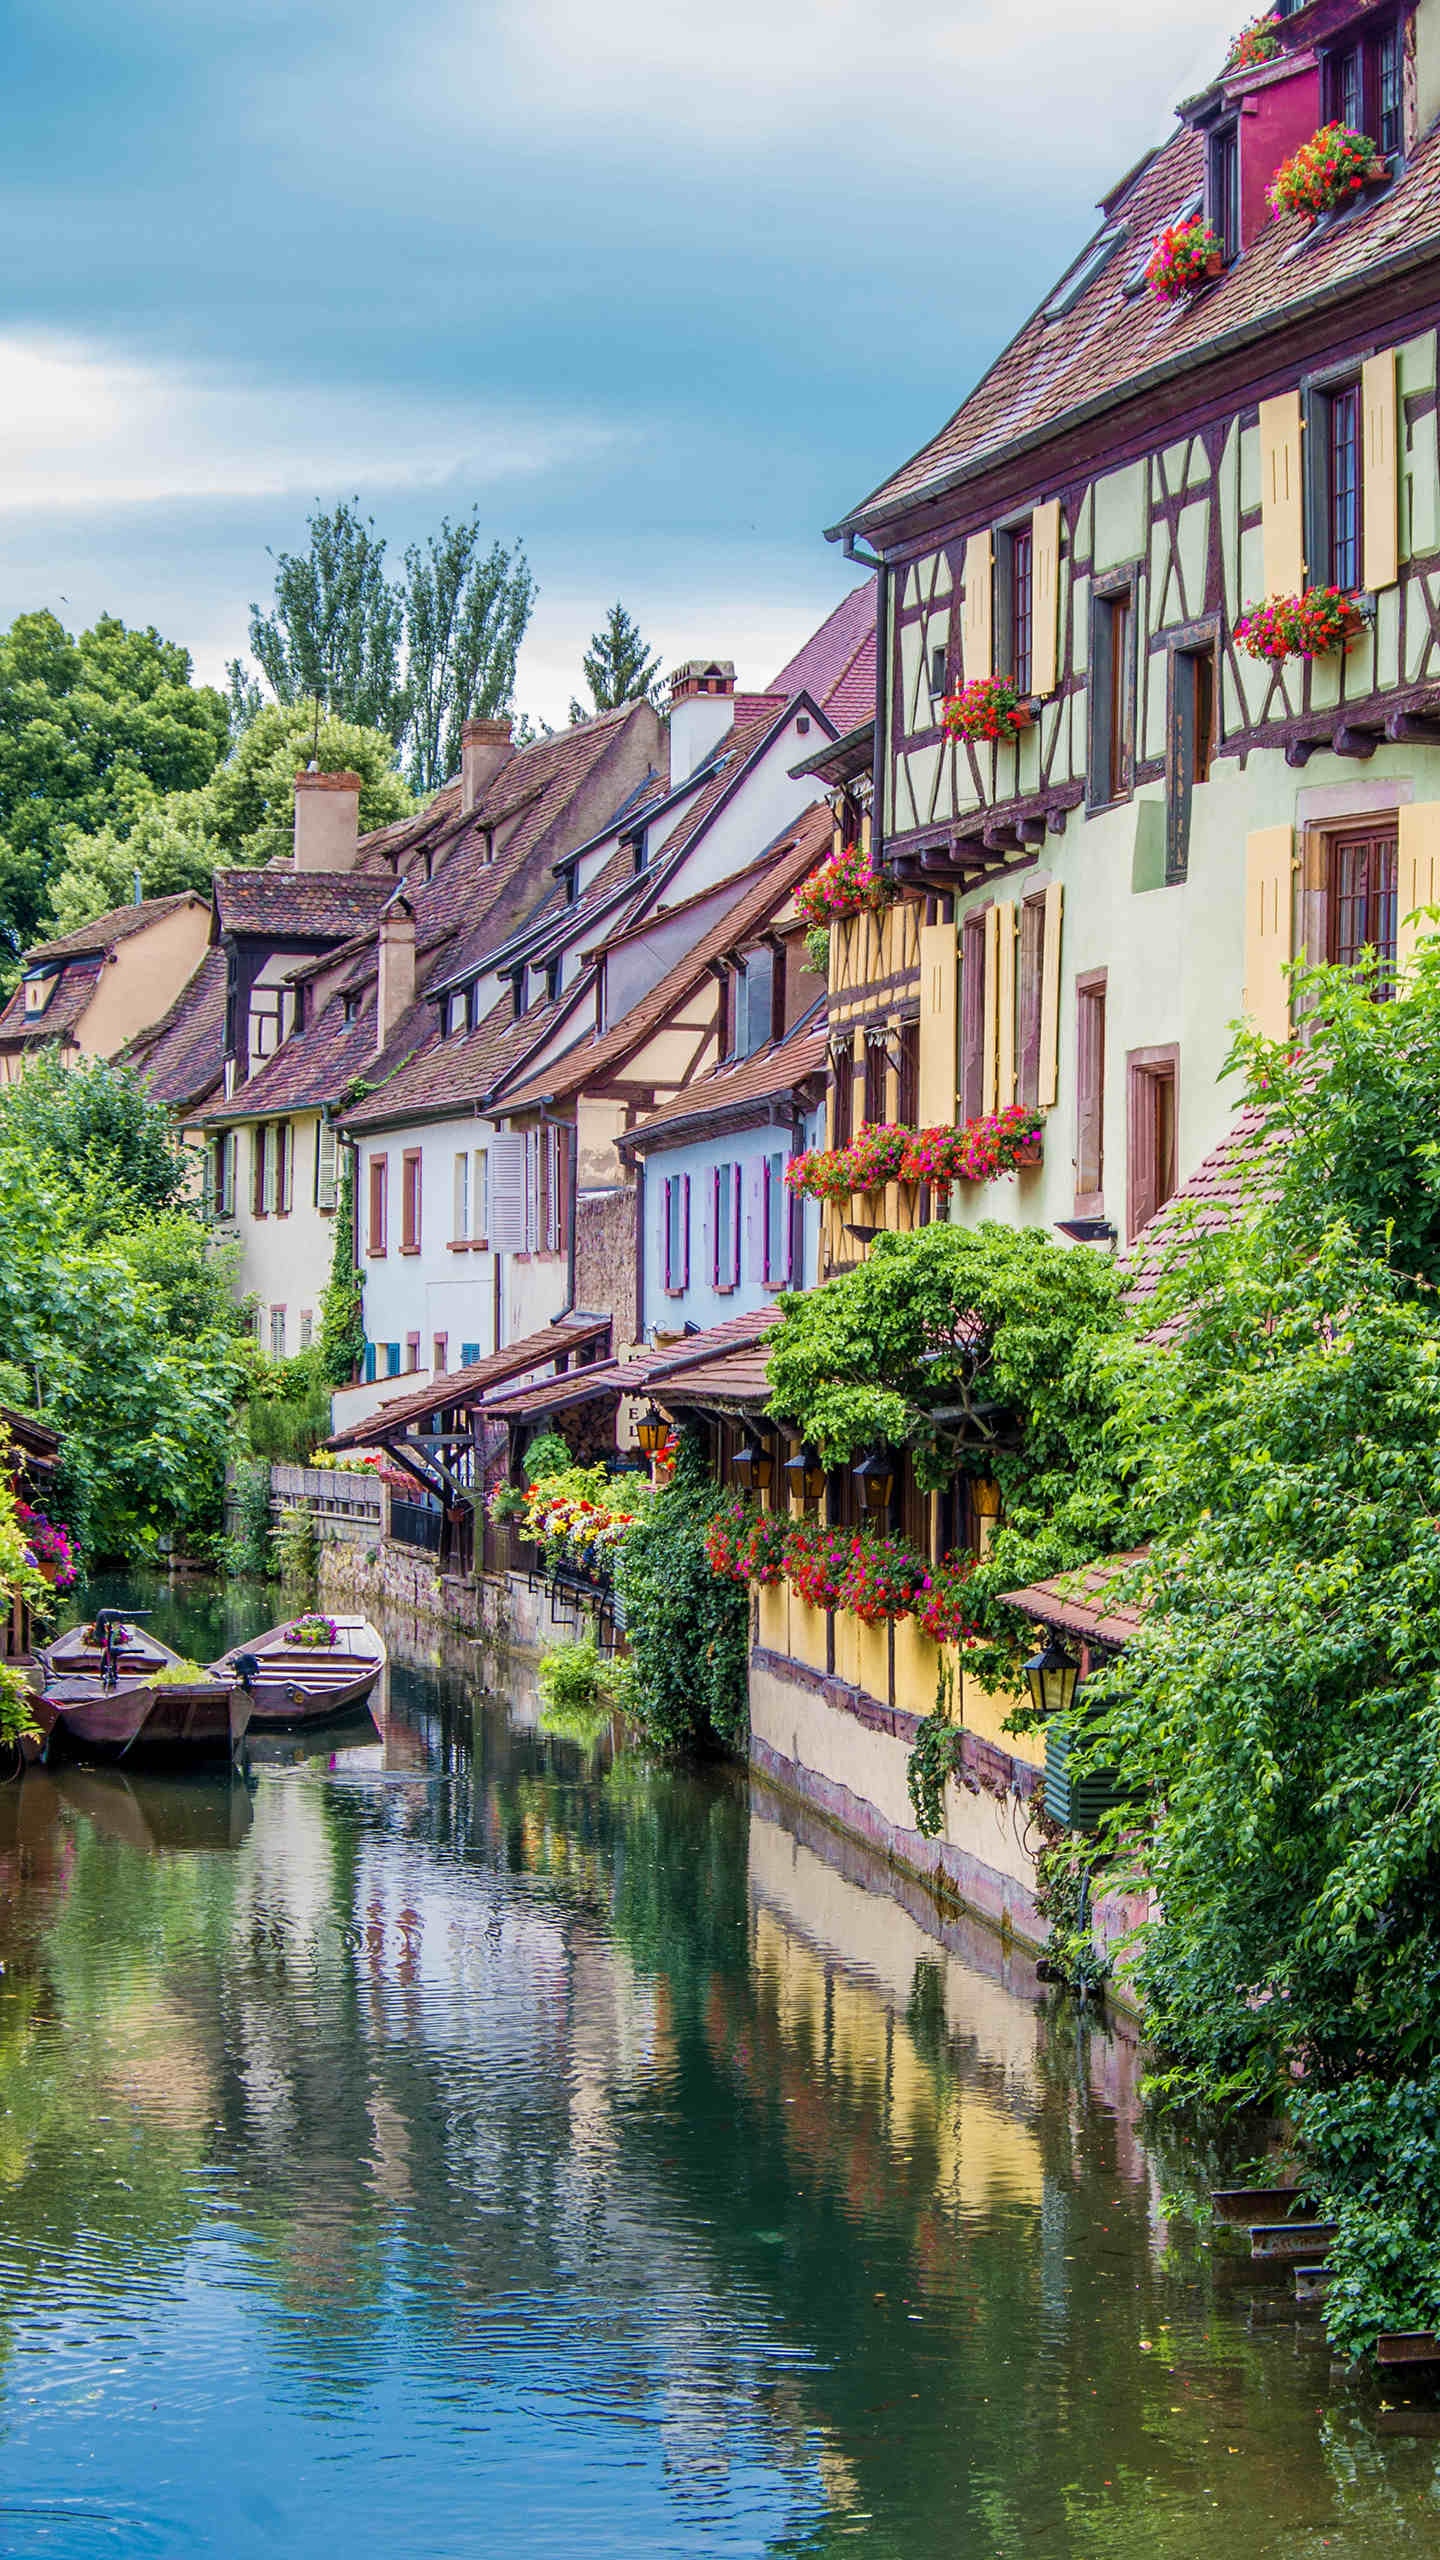 欧洲小镇风景图片高清手机壁纸